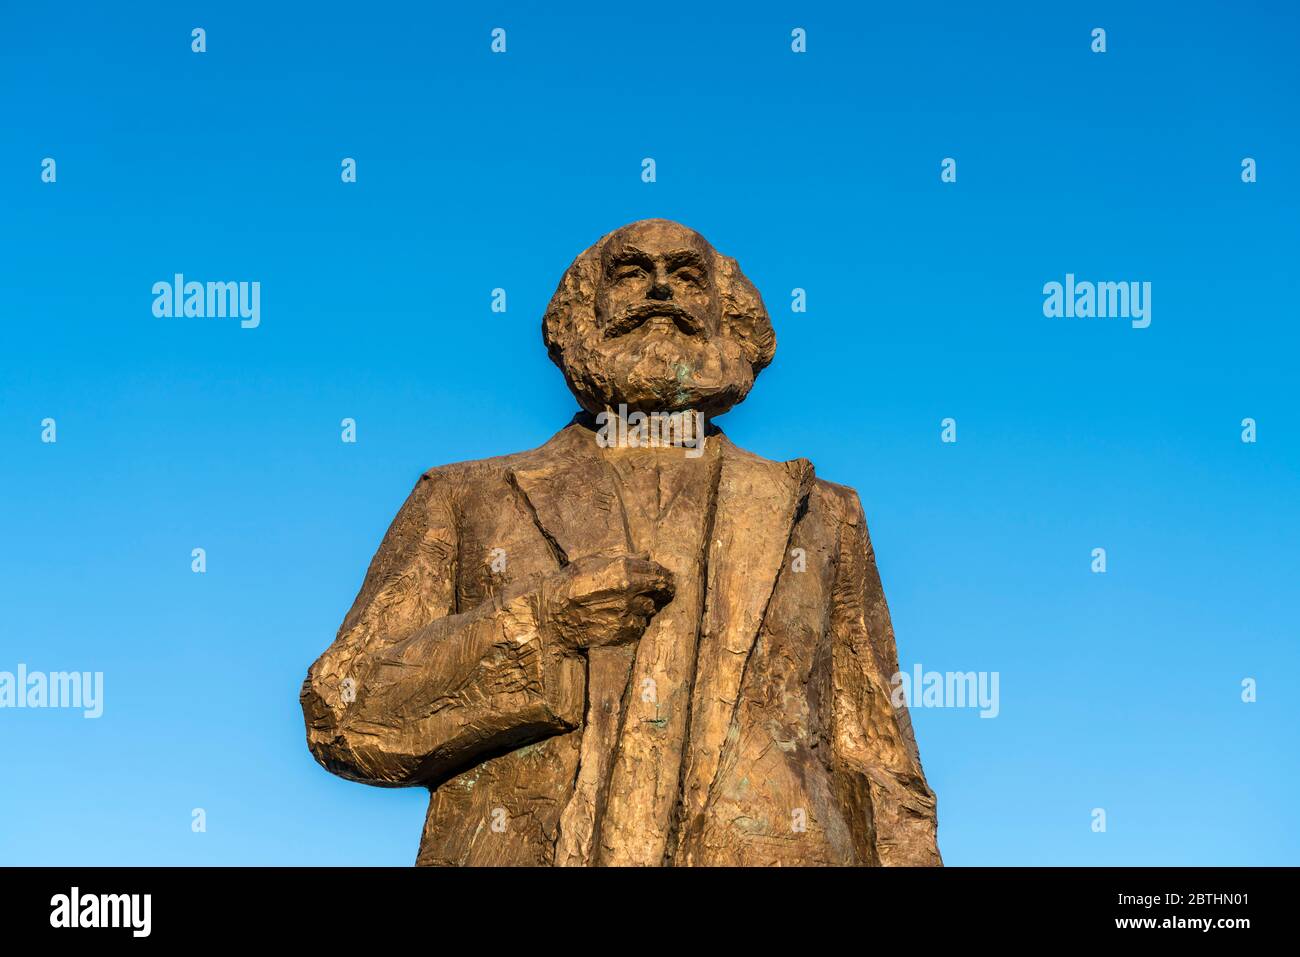 Die Karl-Marx-Statue auf dem Simeonstiftplatz à Trèves, Rheinland-Pfalz, Allemagne | Statue Karl Marx sur la place Simeonstiftplatz, Trèves, Rhénanie- Banque D'Images